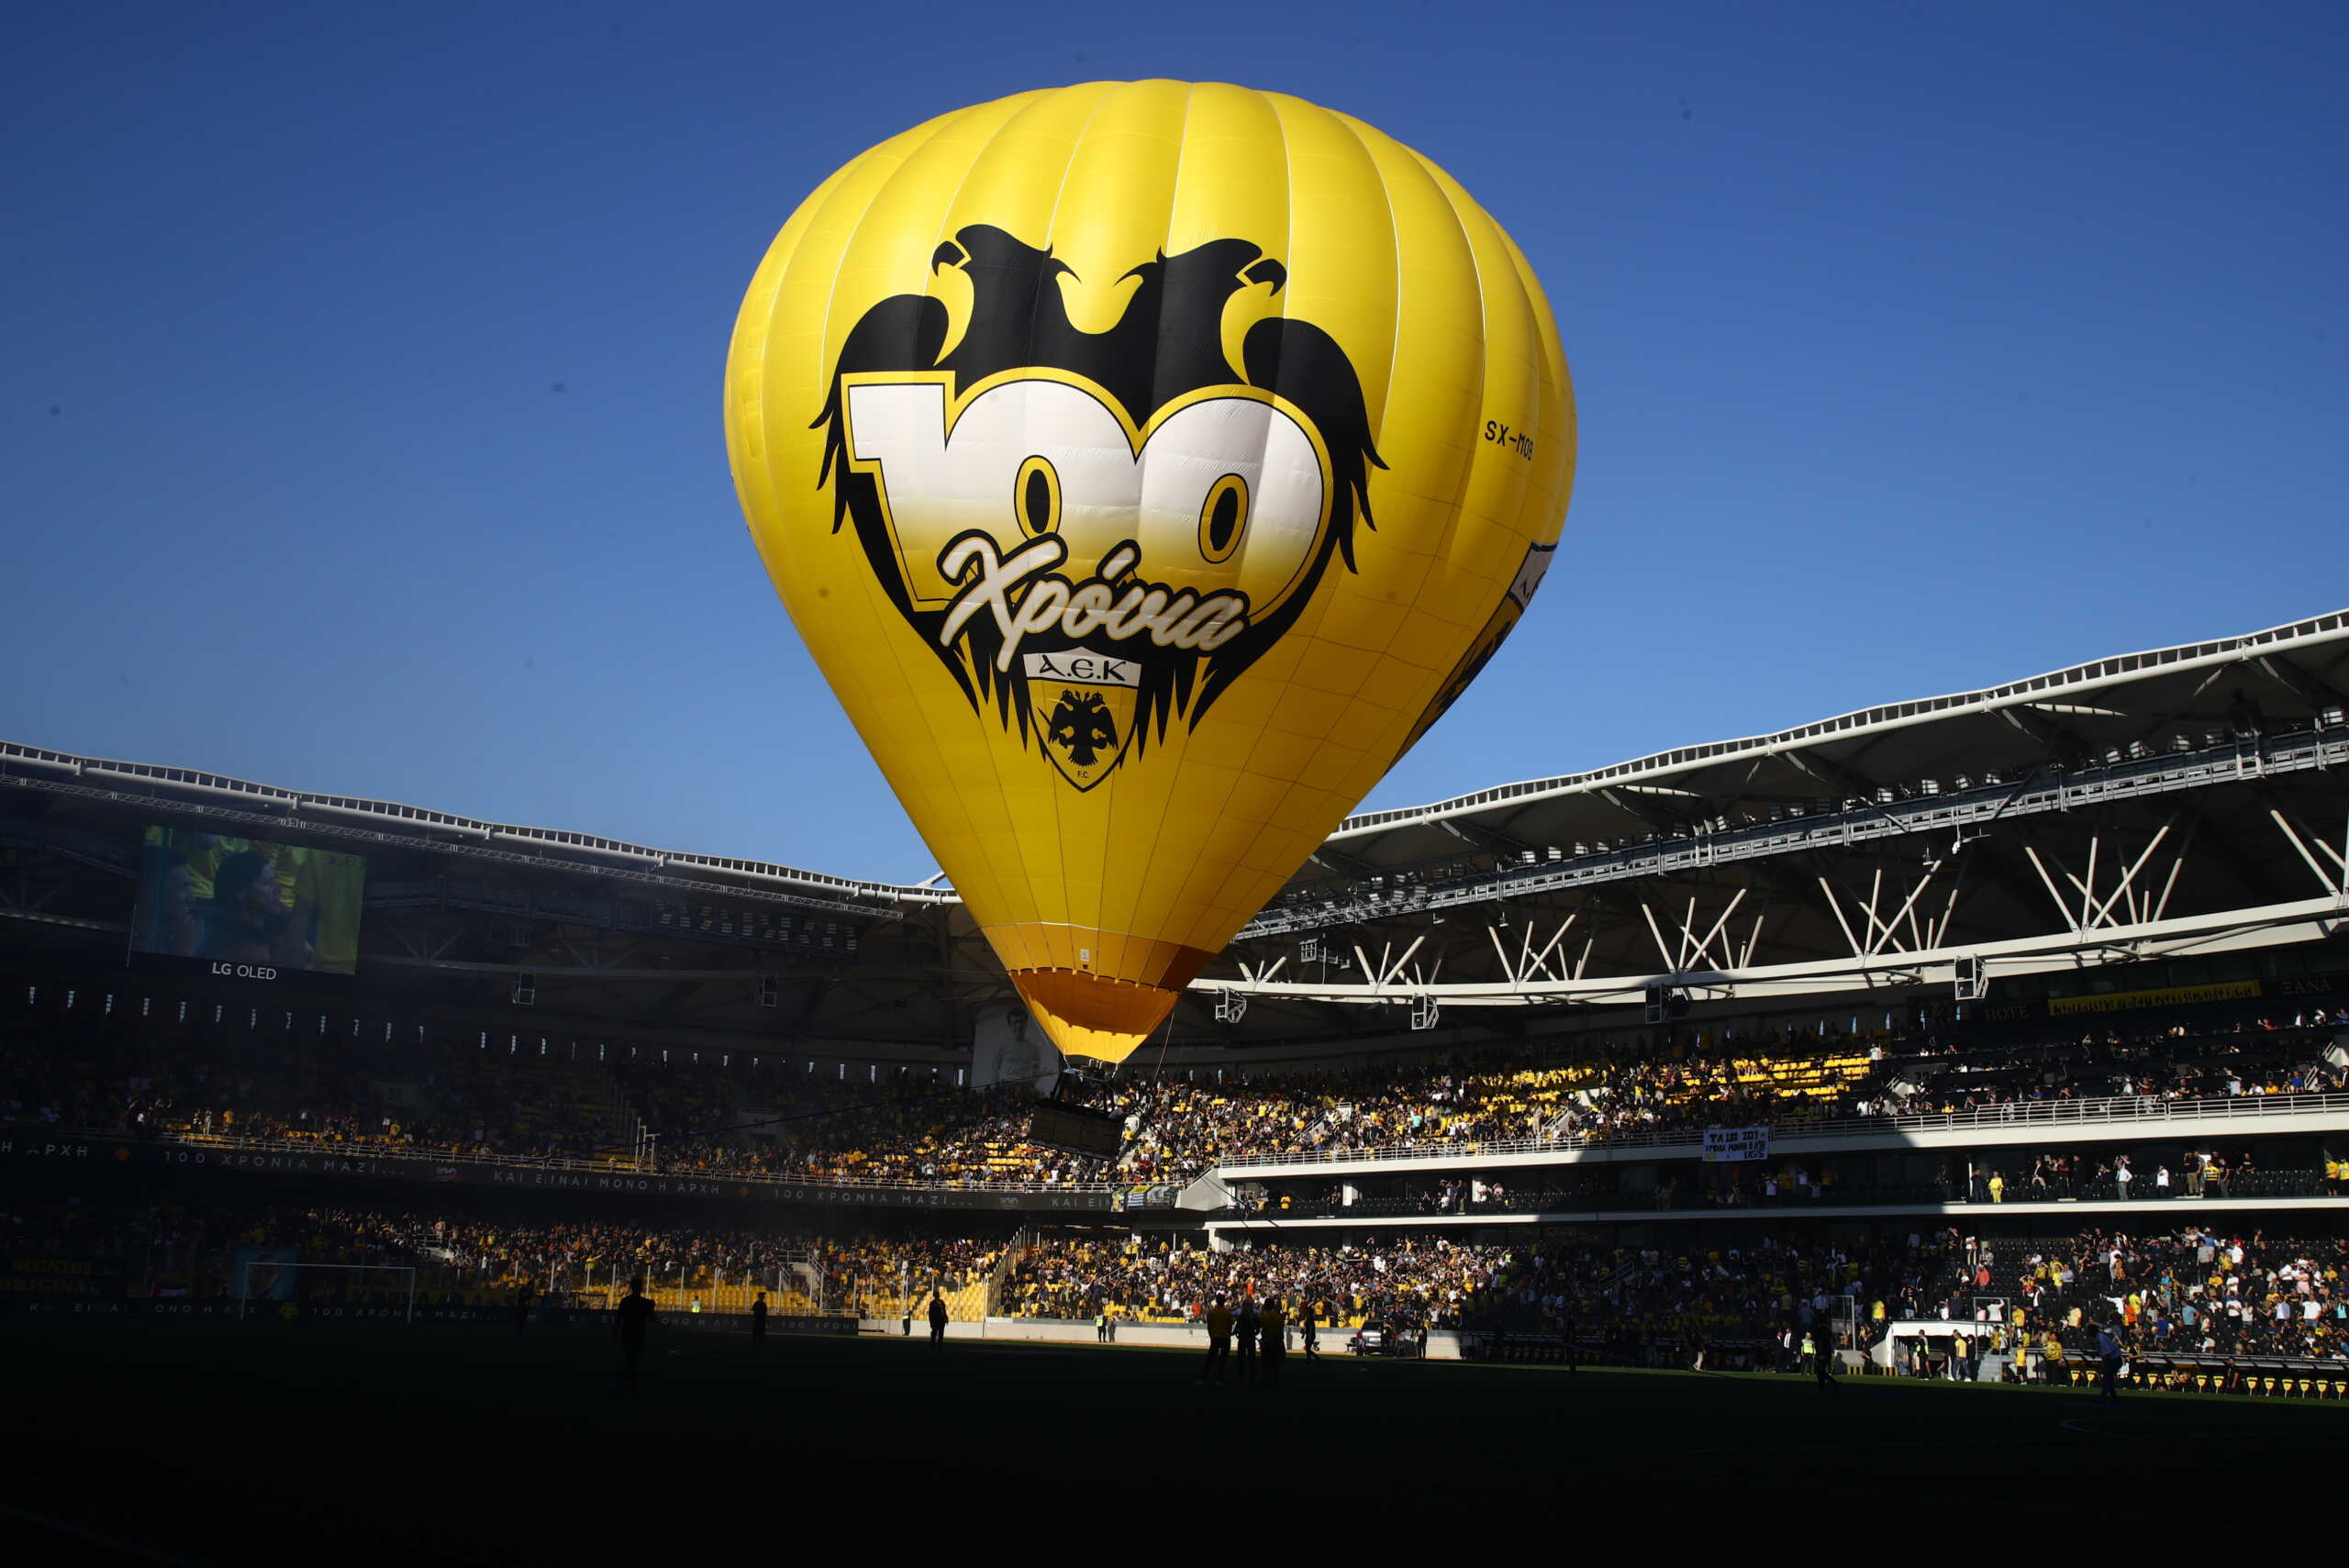 ΑΕΚ: Το εντυπωσιακό αερόστατο για τα 100 χρόνια της Ένωσης